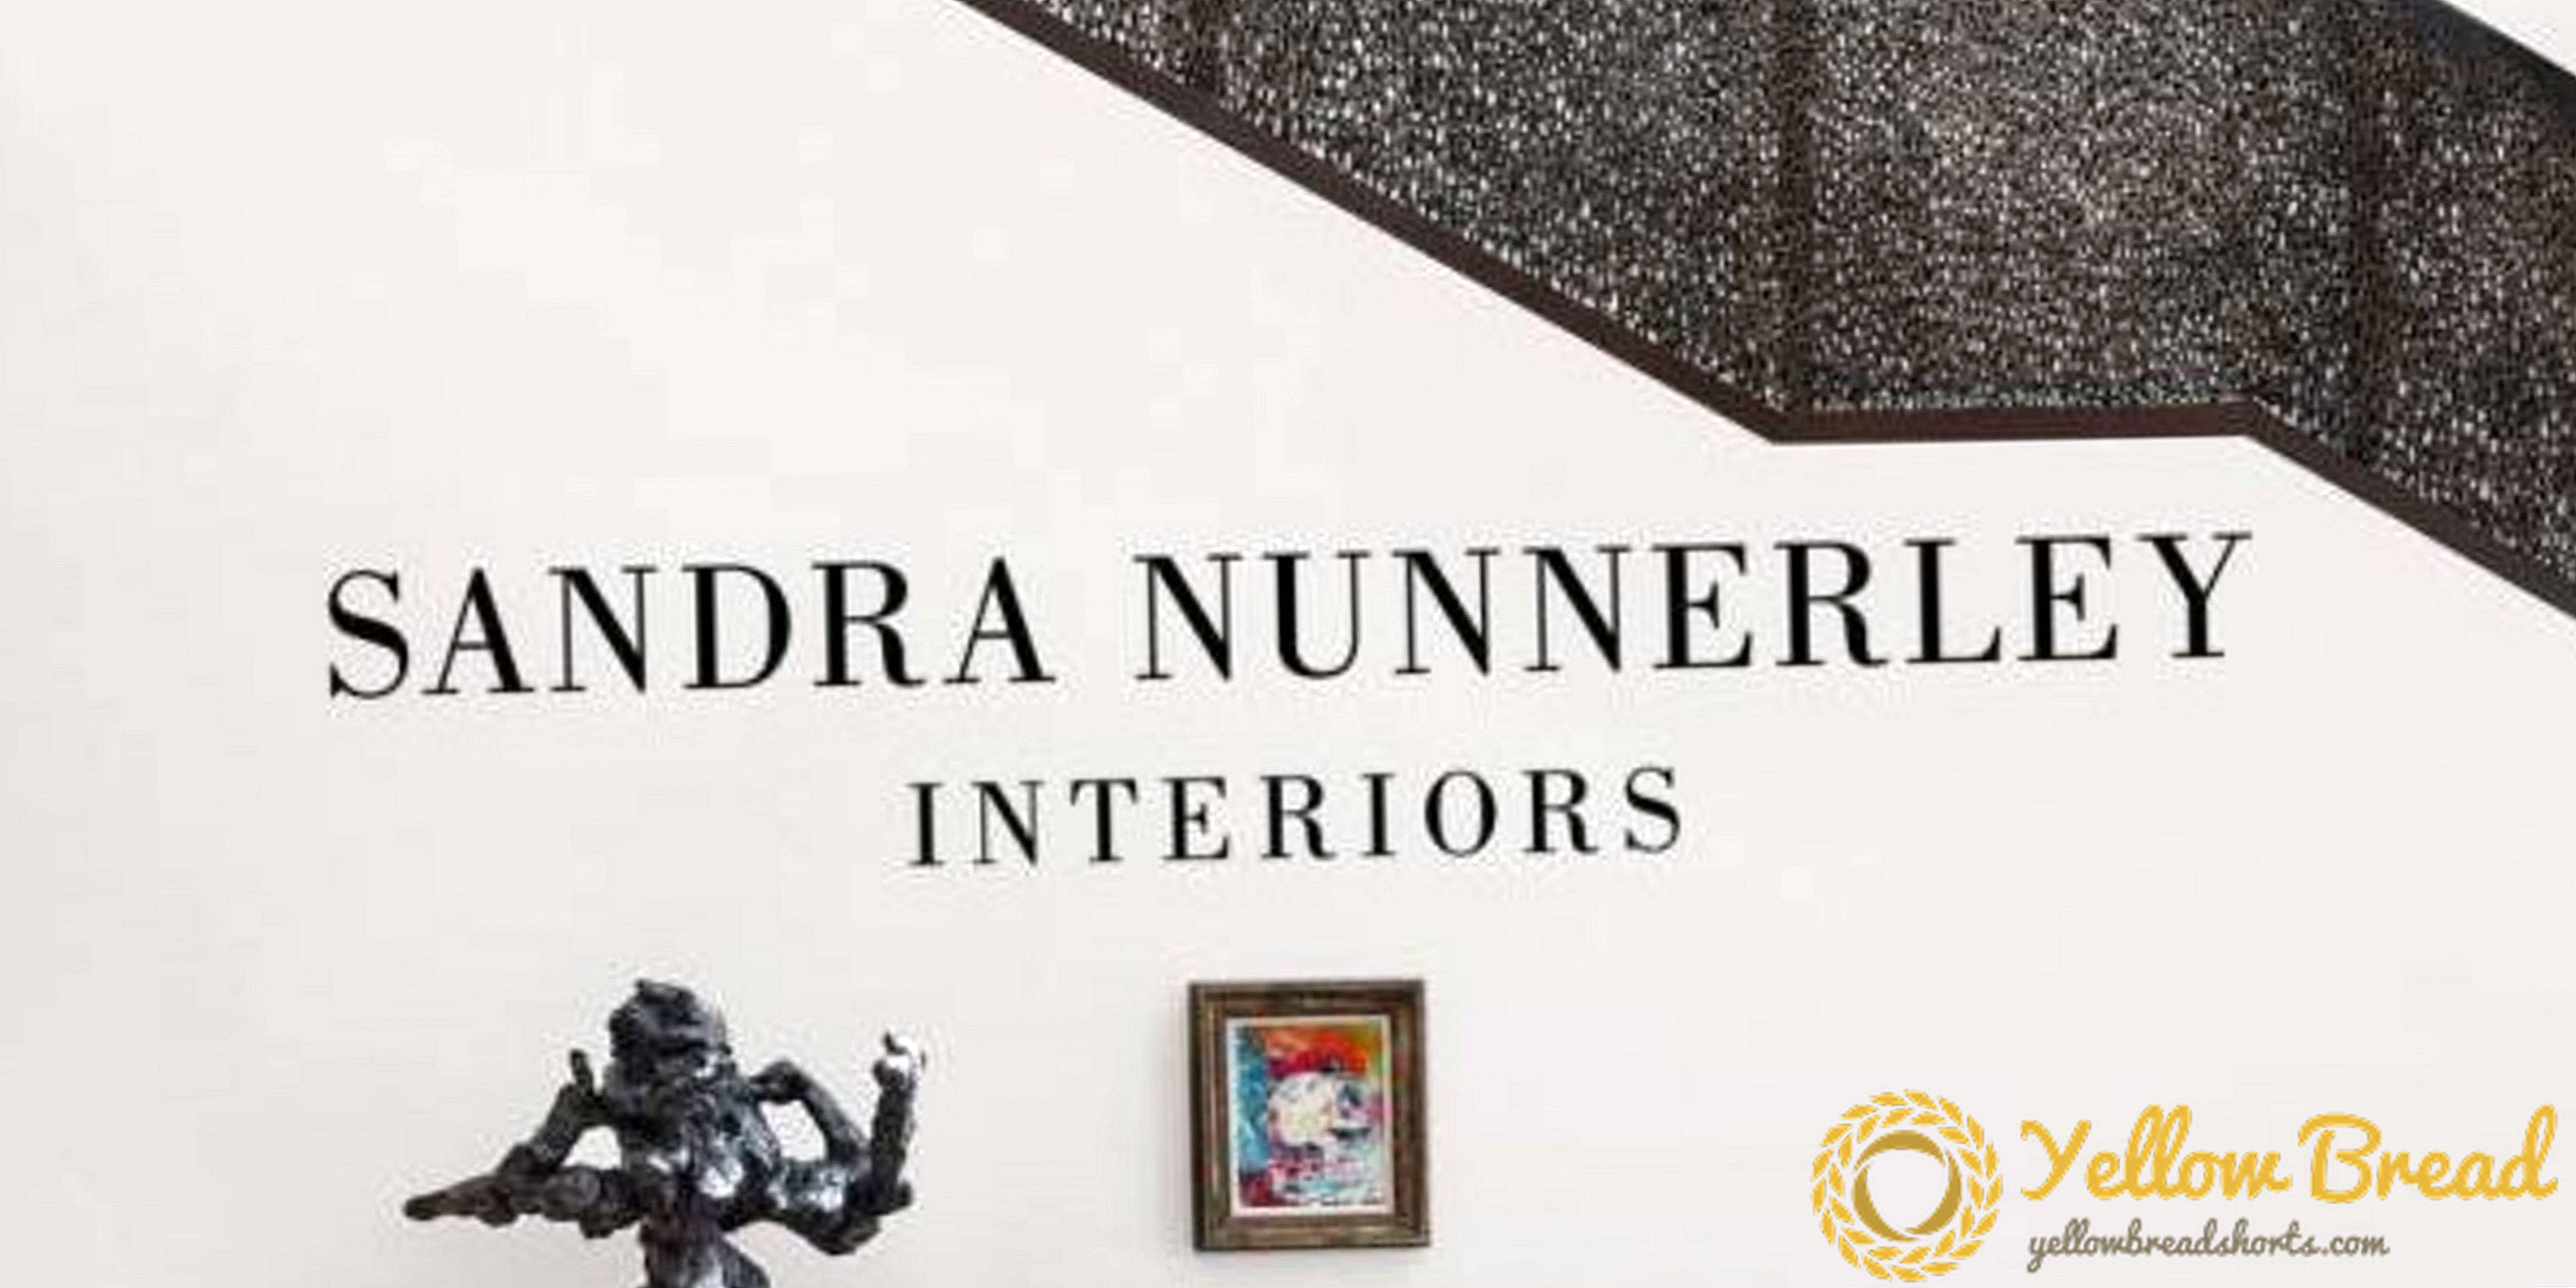 Reka Bentuk Baru Tome Chronicles Sandra Nunnerley's Interiors Travel-Inspired